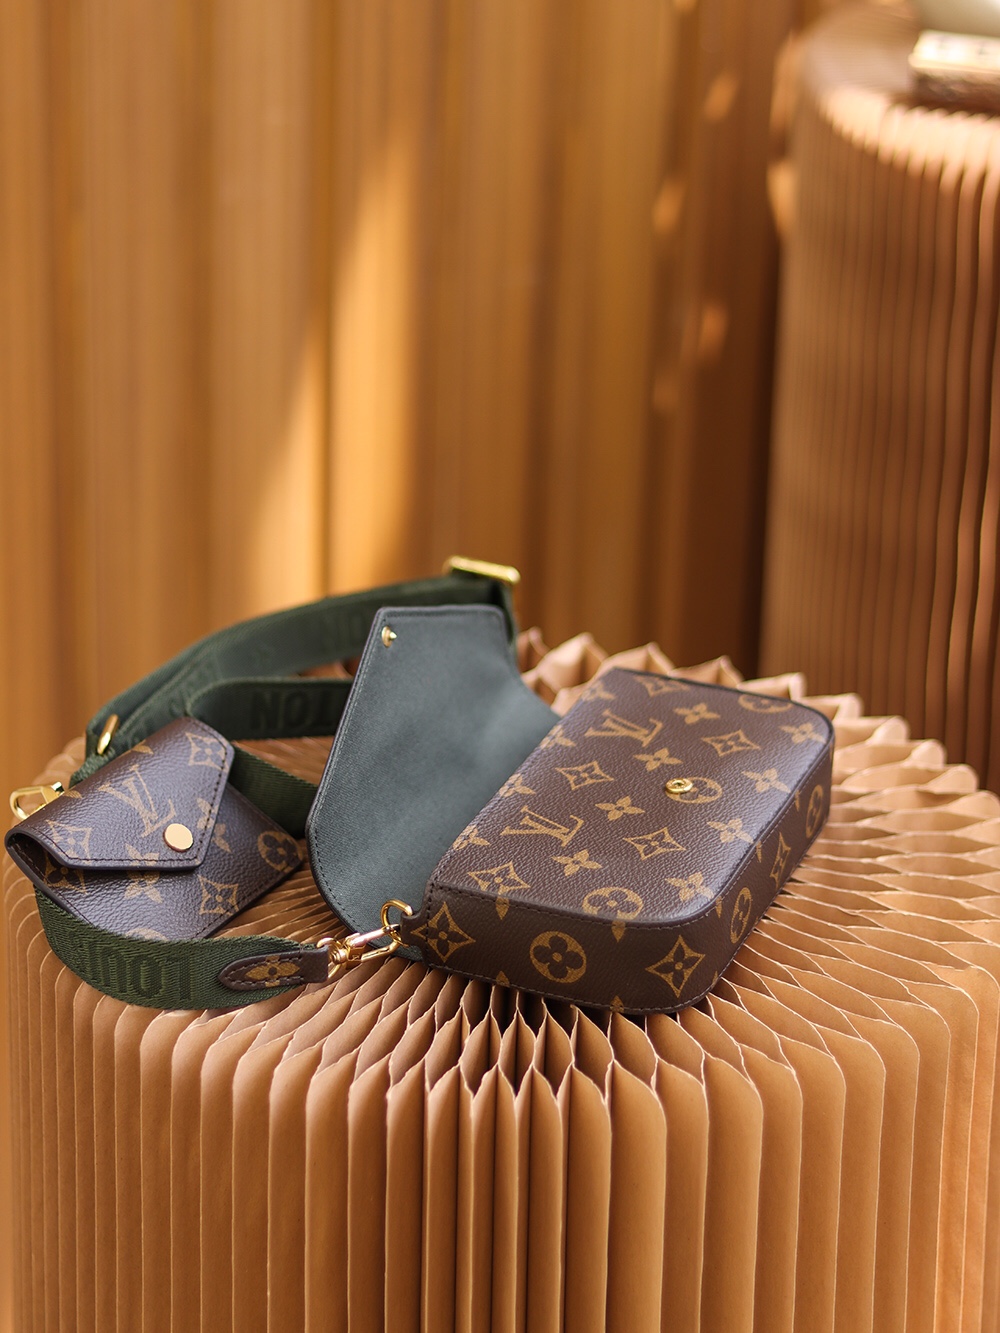 Shop Louis Vuitton 2021 SS Félicie Strap & Go (CLUTCH FELICIE STRAP GO,  M80091) by Mikrie